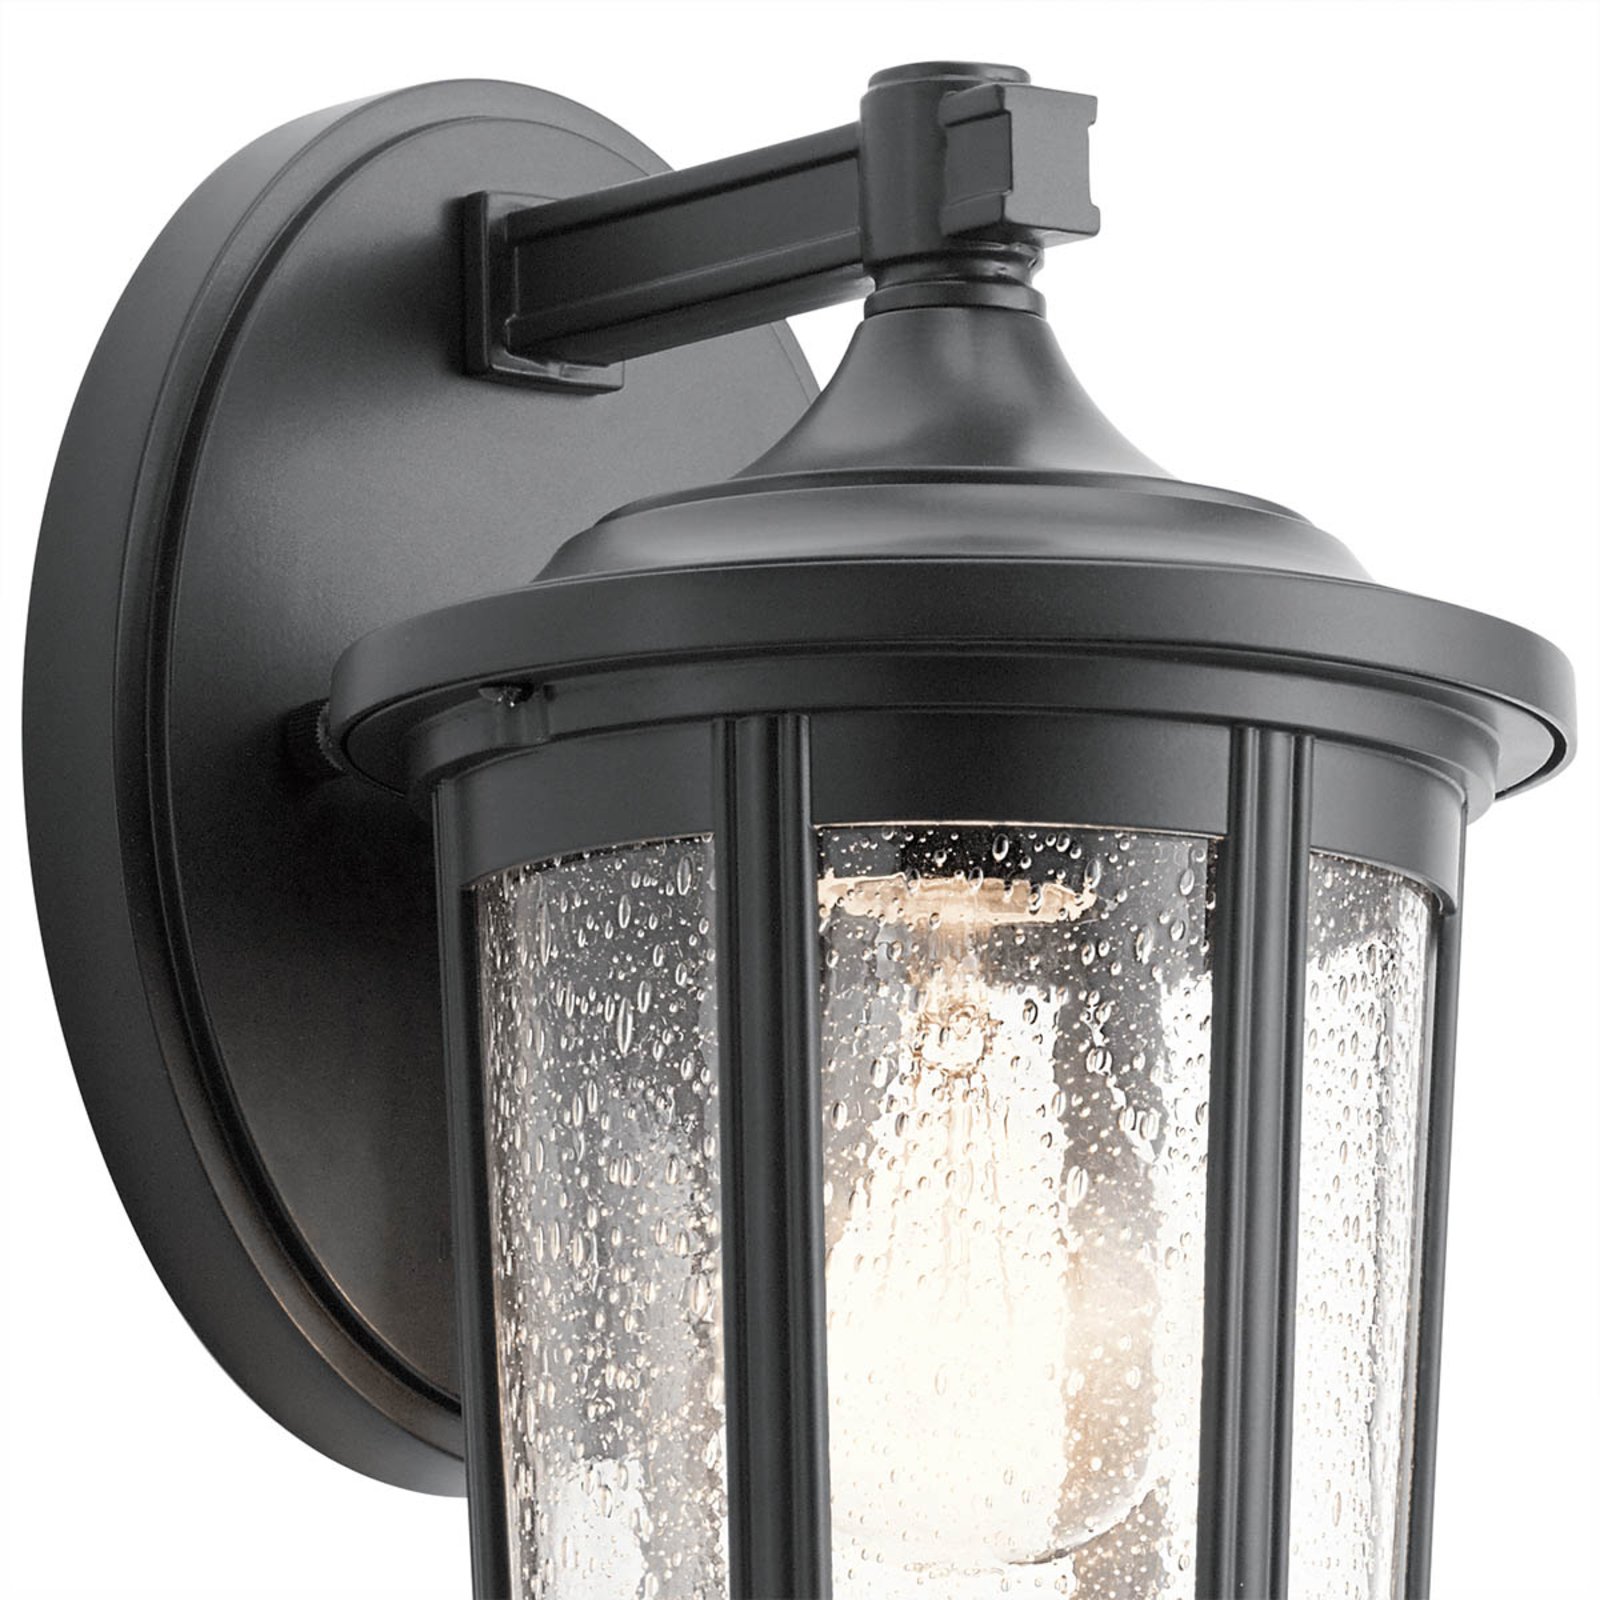 Buitenwandlamp Fairfield, zwart, 1-lamp